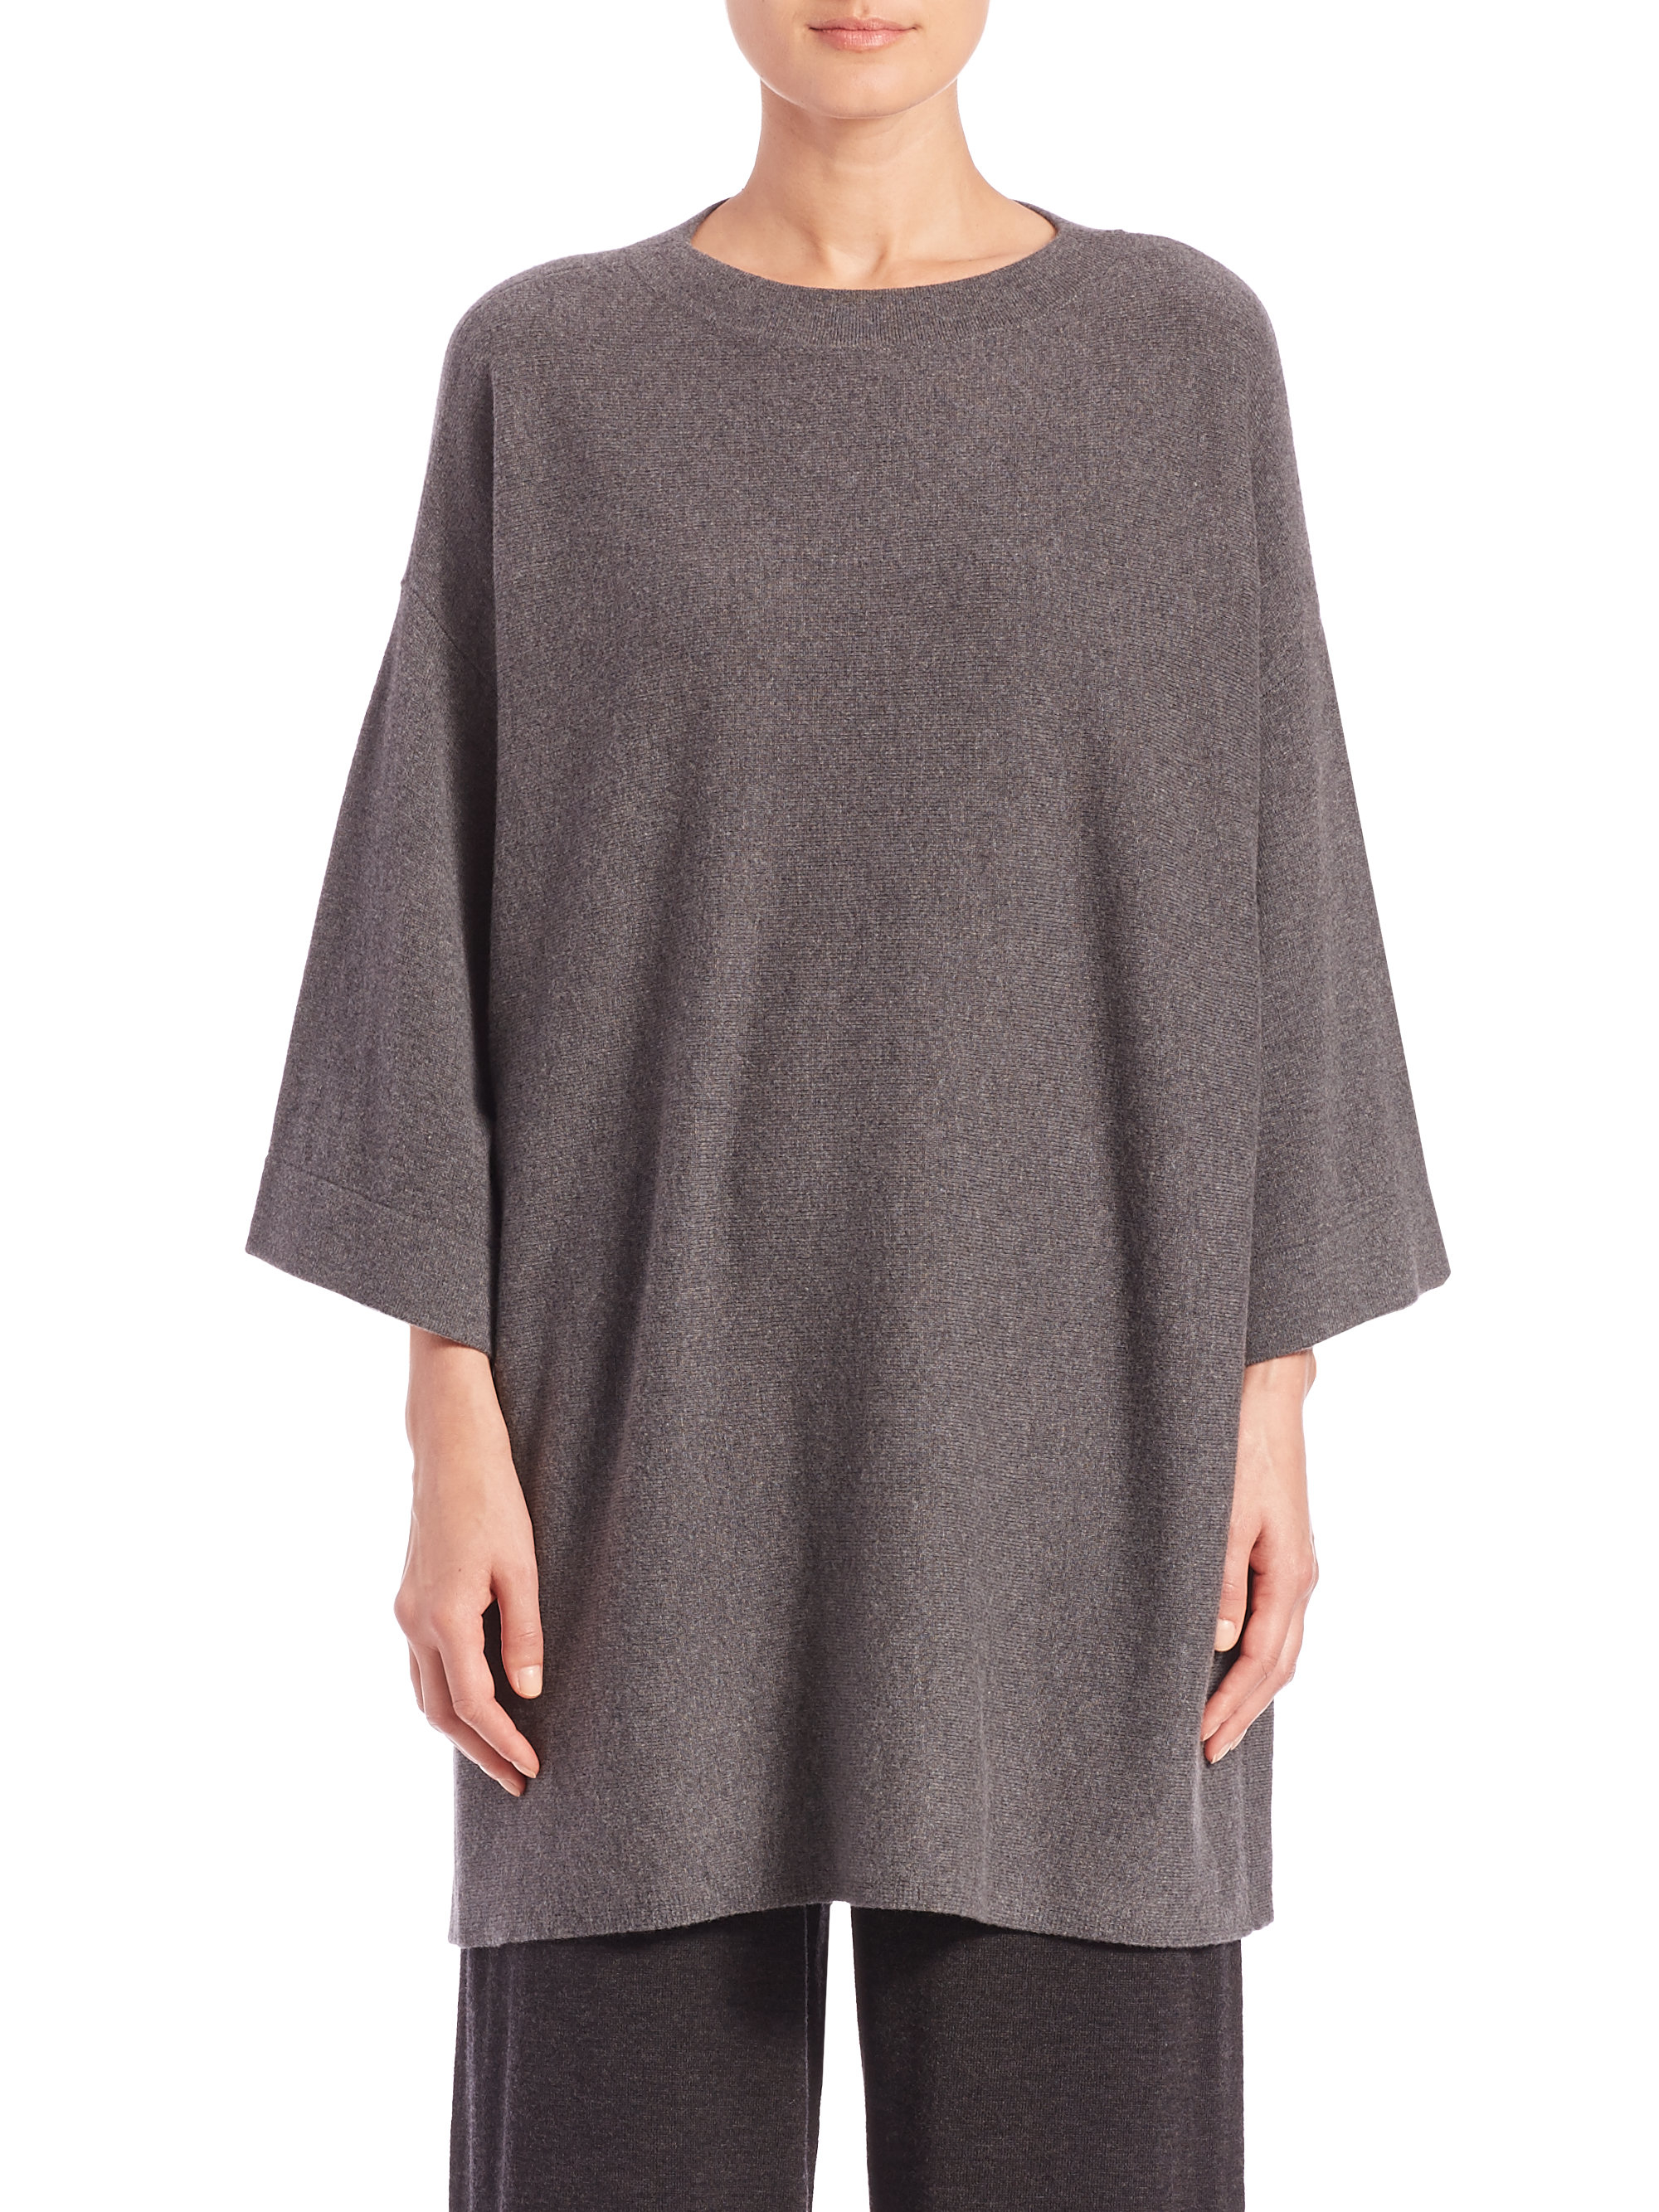 Lyst - Eileen Fisher Wool Dolman-sleeve Top in Gray